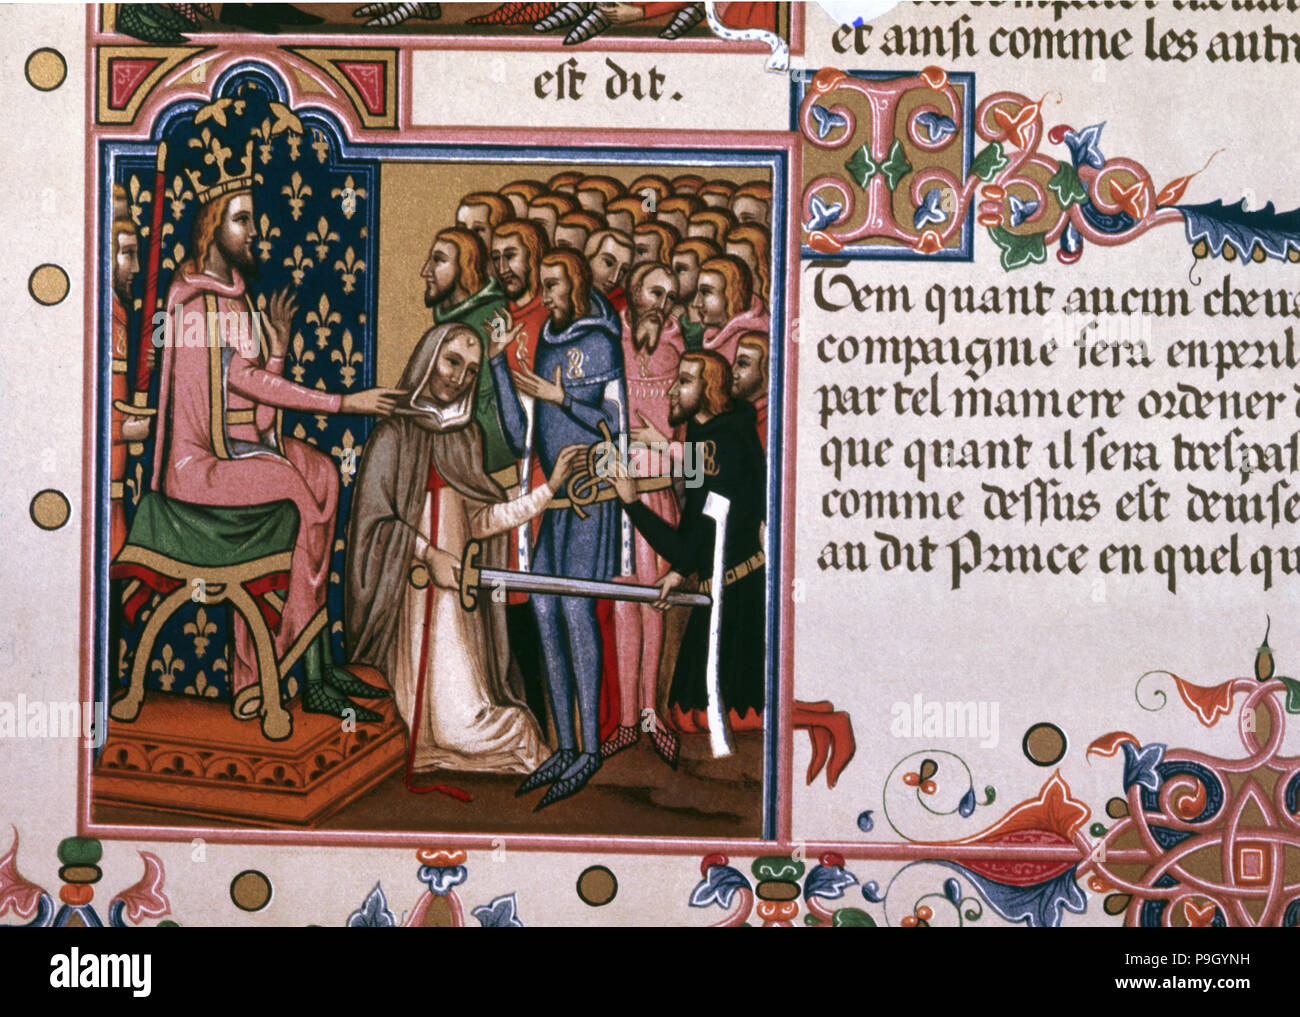 Einsetzung eines Gentleman, Seite von einem Manuskript aus dem 14. Jahrhundert mit dem Titel "Orden des Heiligen Geistes". Stockfoto